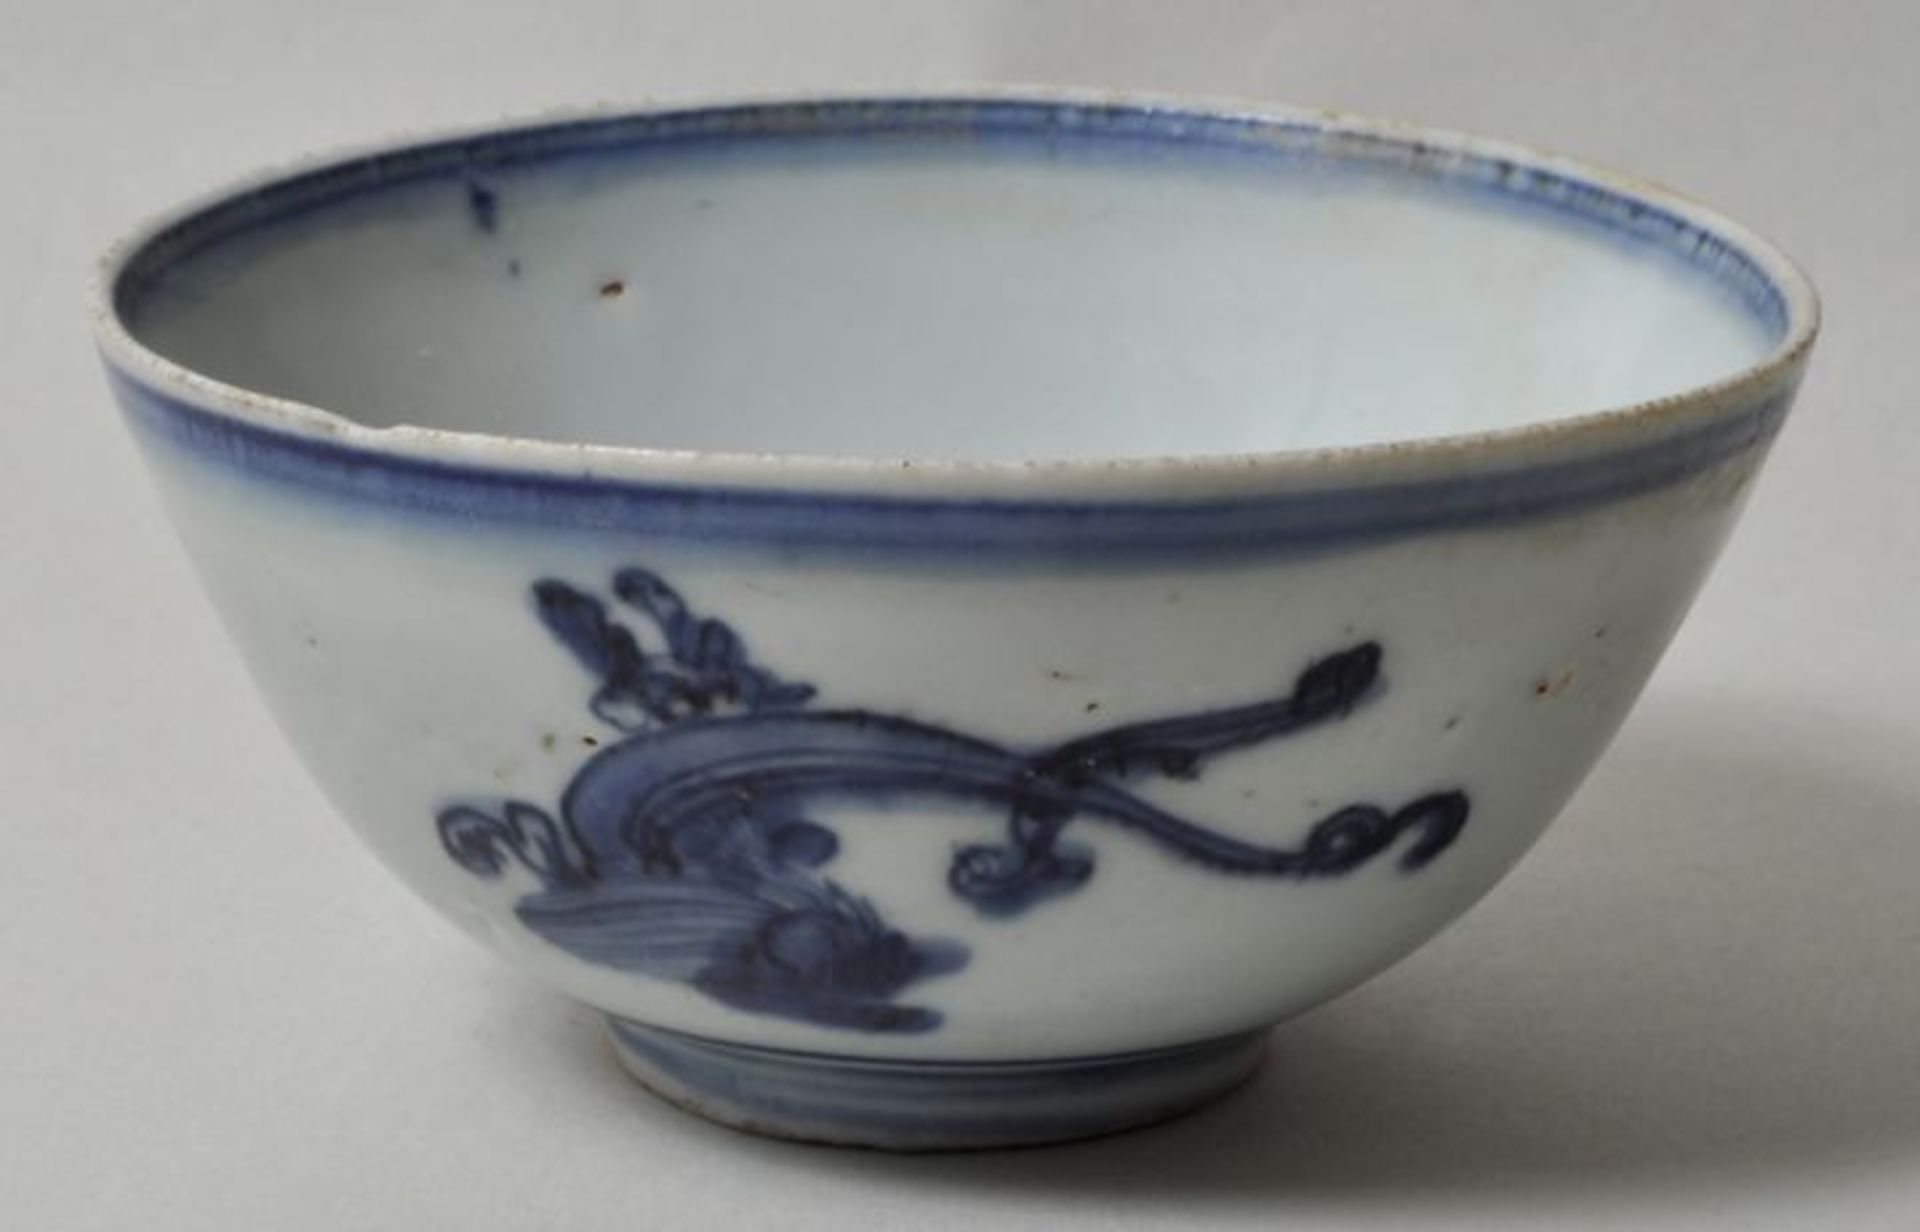 China. Kumme.Porzellan mit Malerei in Unterglasurblau. Flüchtig gezeichnete Marke, wohl Tongzhi,